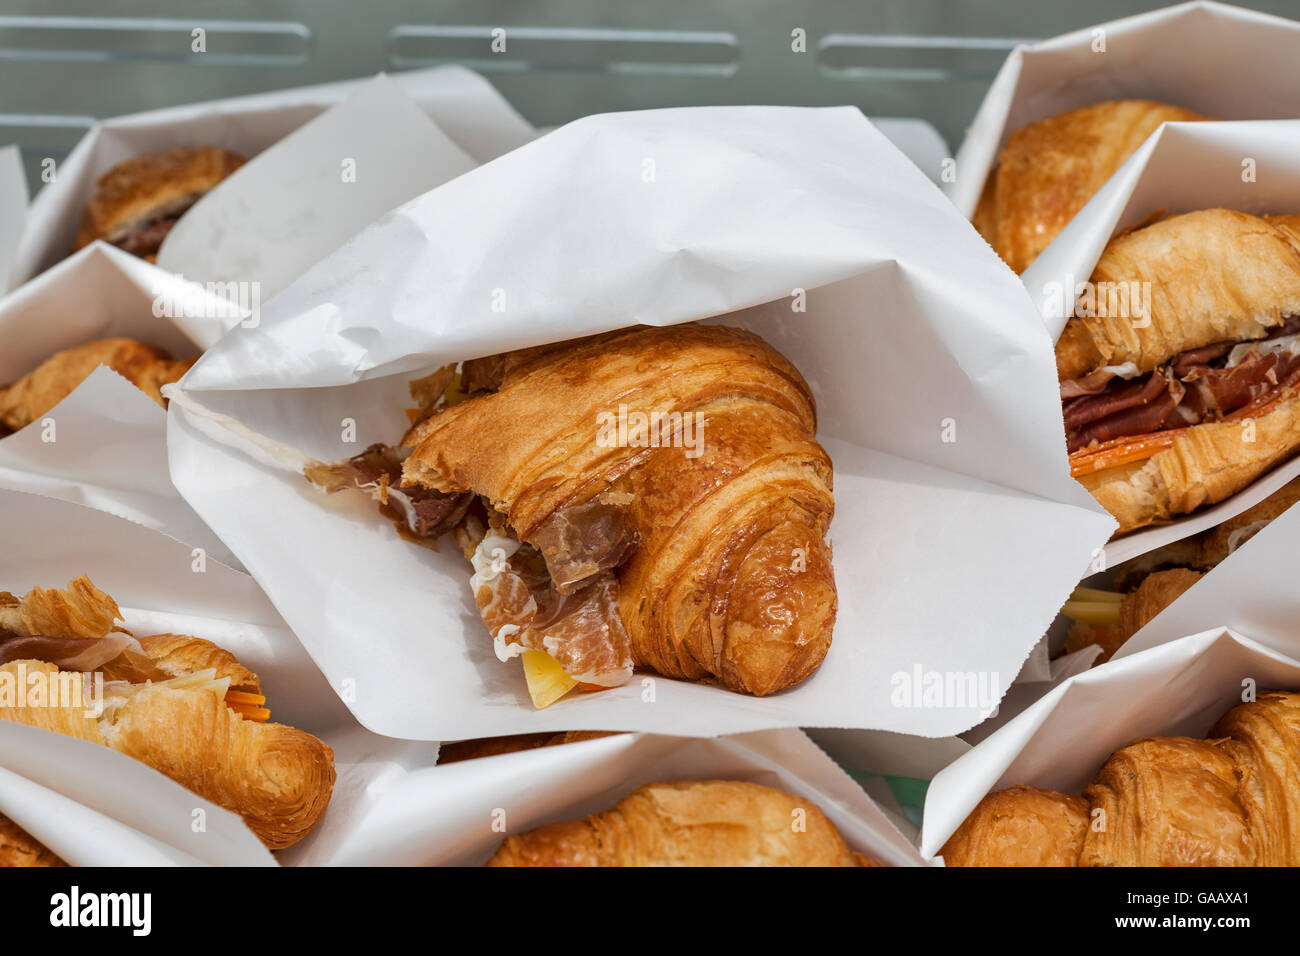 Cucina di strada croissant con prosciutto e formaggio servita in sacchi di carta closeup Foto Stock